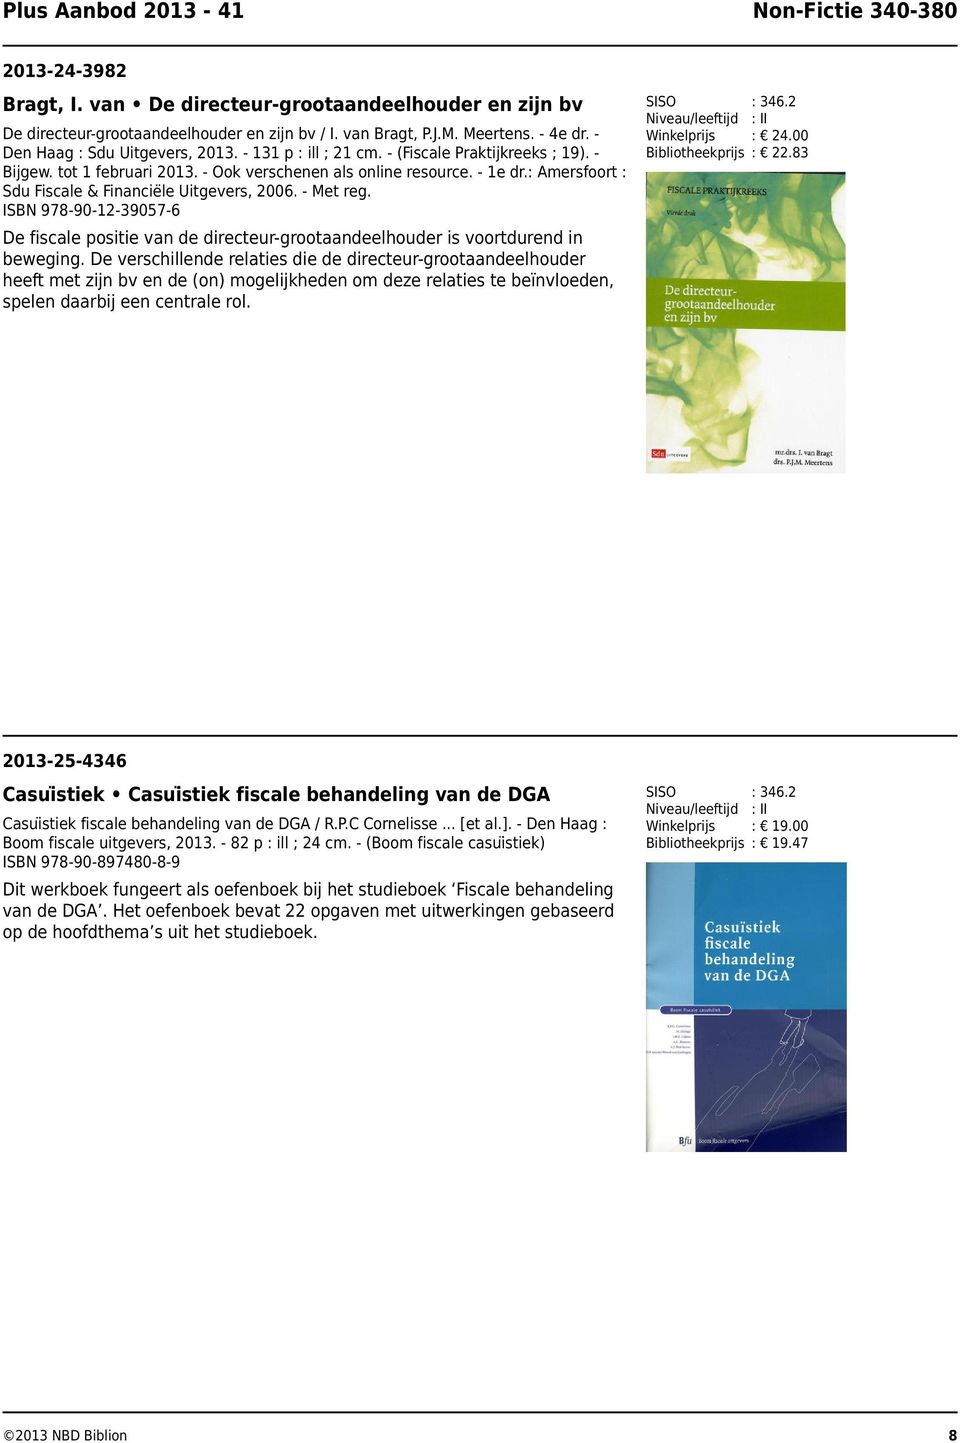 : Amersfoort : Sdu Fiscale & Financie le Uitgevers, 2006. - Met reg. ISBN 978-90-12-39057-6 : 346.2 : 24.00 : 22.83 : 346.2 : 19.00 : 19.